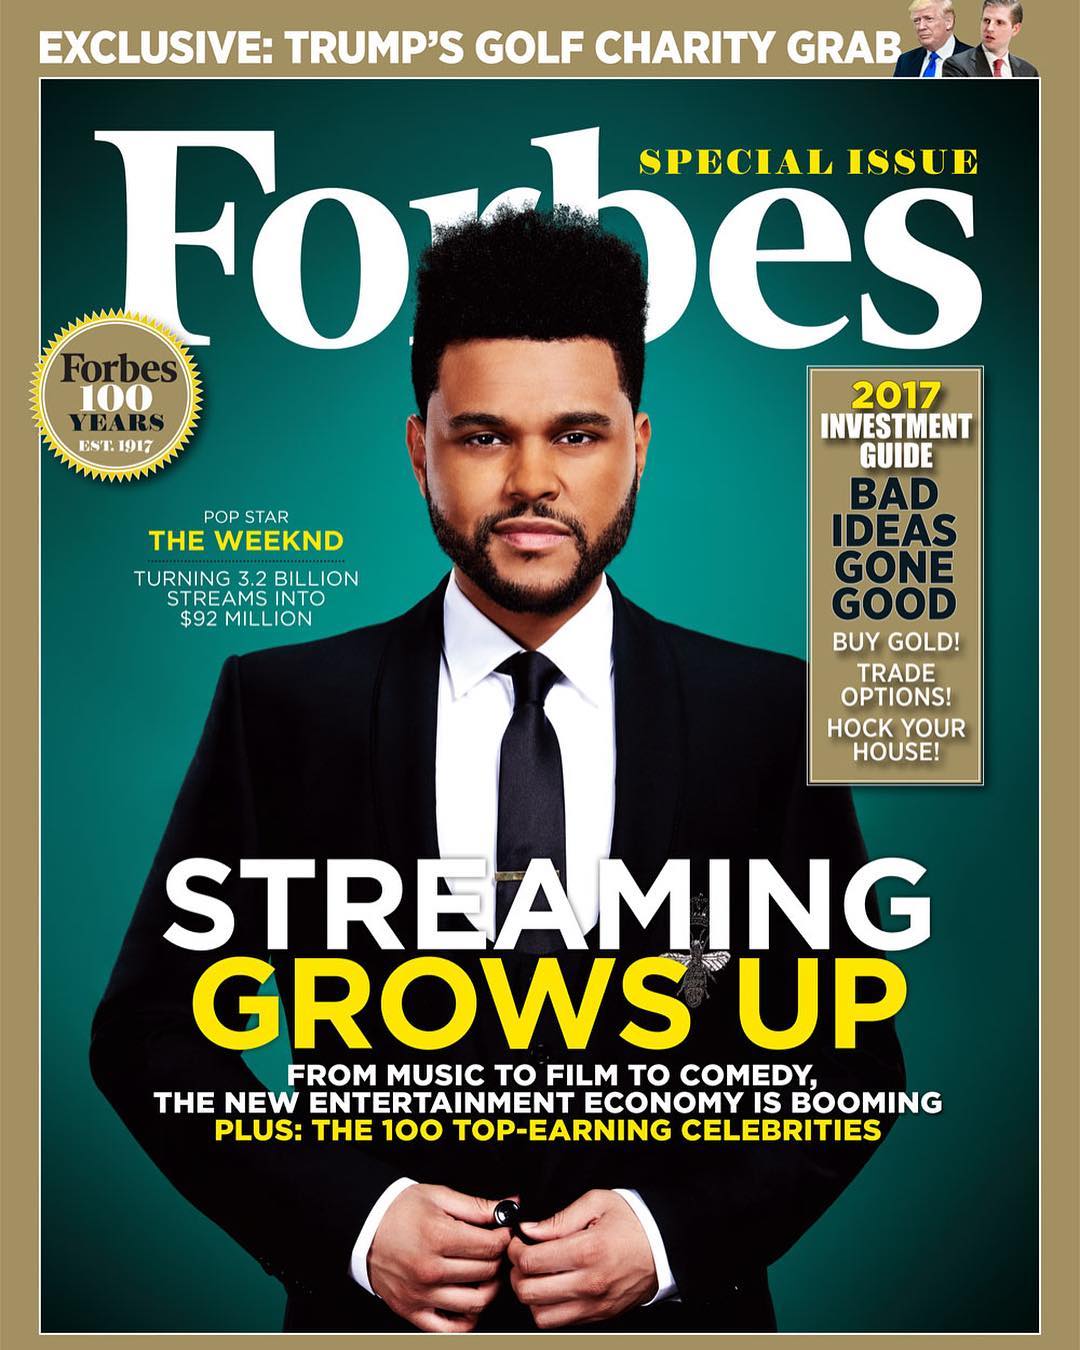 The Weeknd protagoniza la portada de revista "Forbes" como uno de las